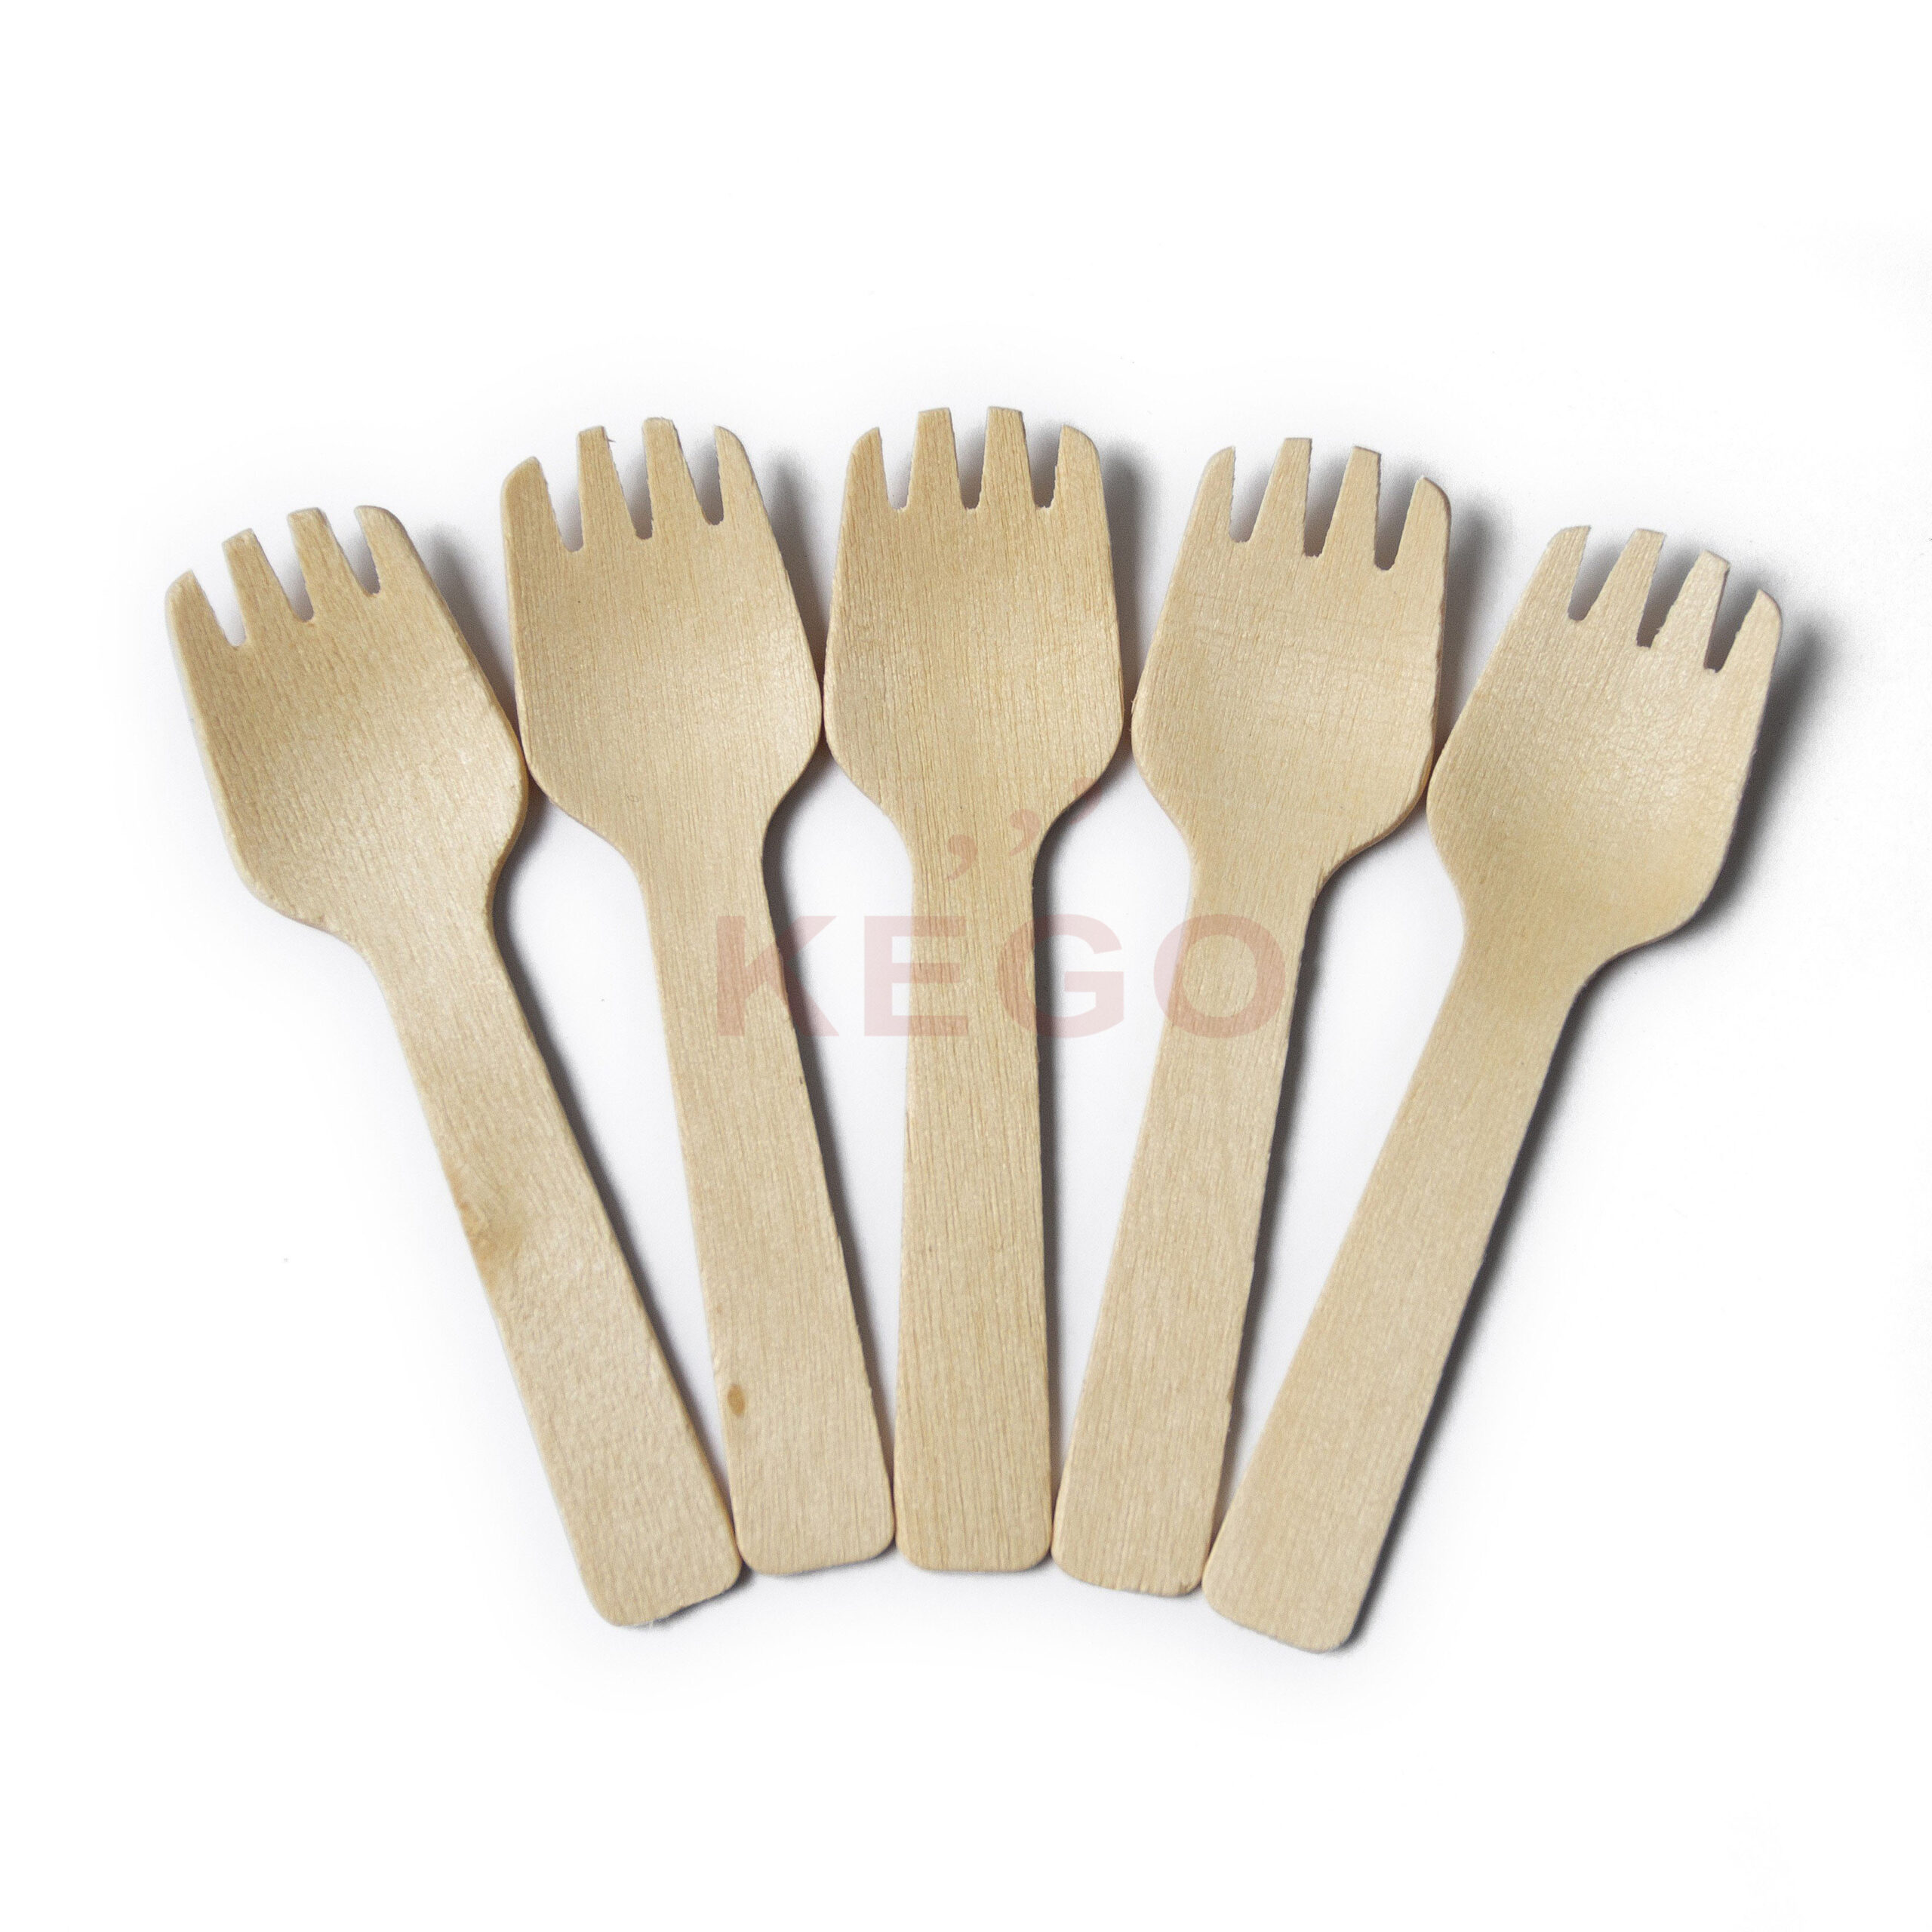 https://kego.vn/wp-content/uploads/2015/09/Disposable-Wooden-Fork-95-3-scaled.jpg